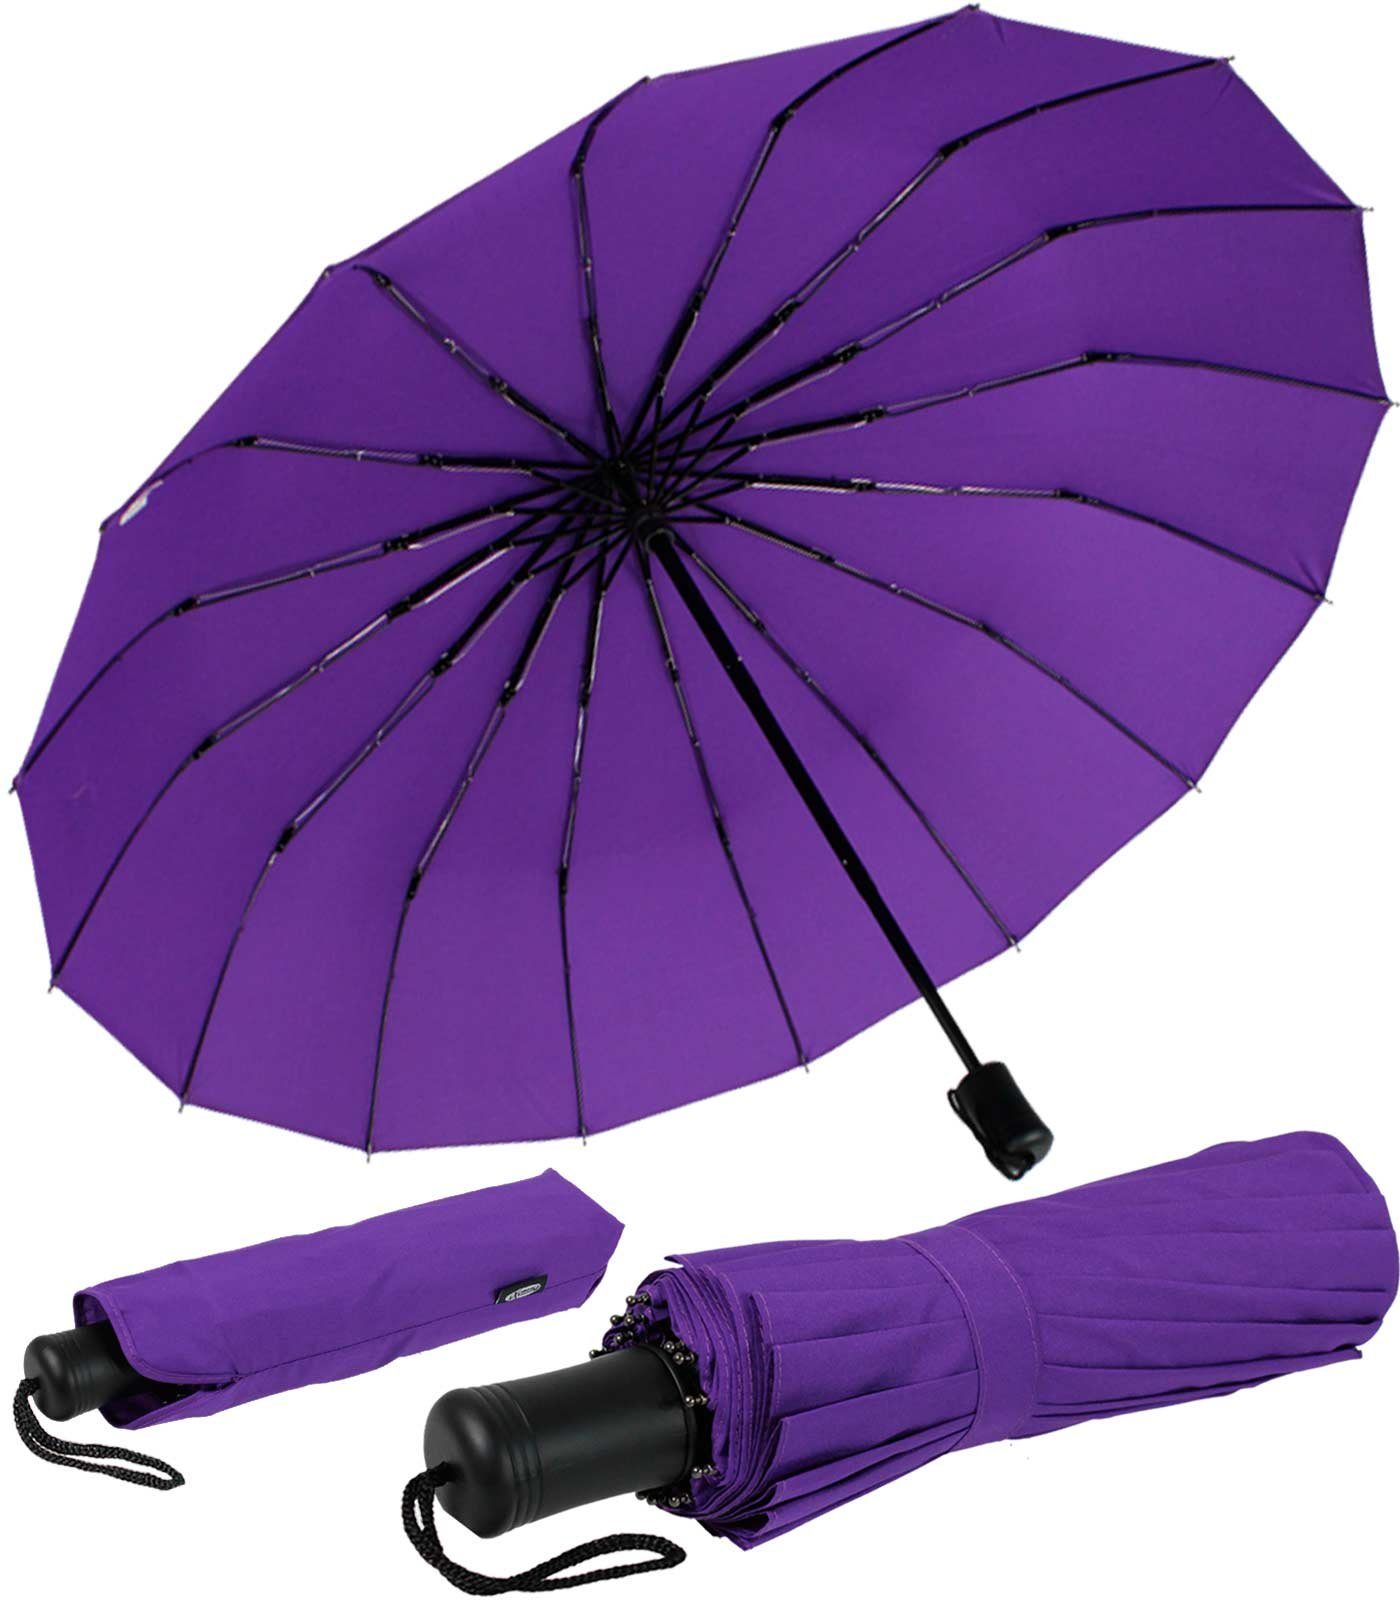 iX-brella Taschenregenschirm Mini mit Streben farbenfroh, lila extra 16 stabil farbenfroh und